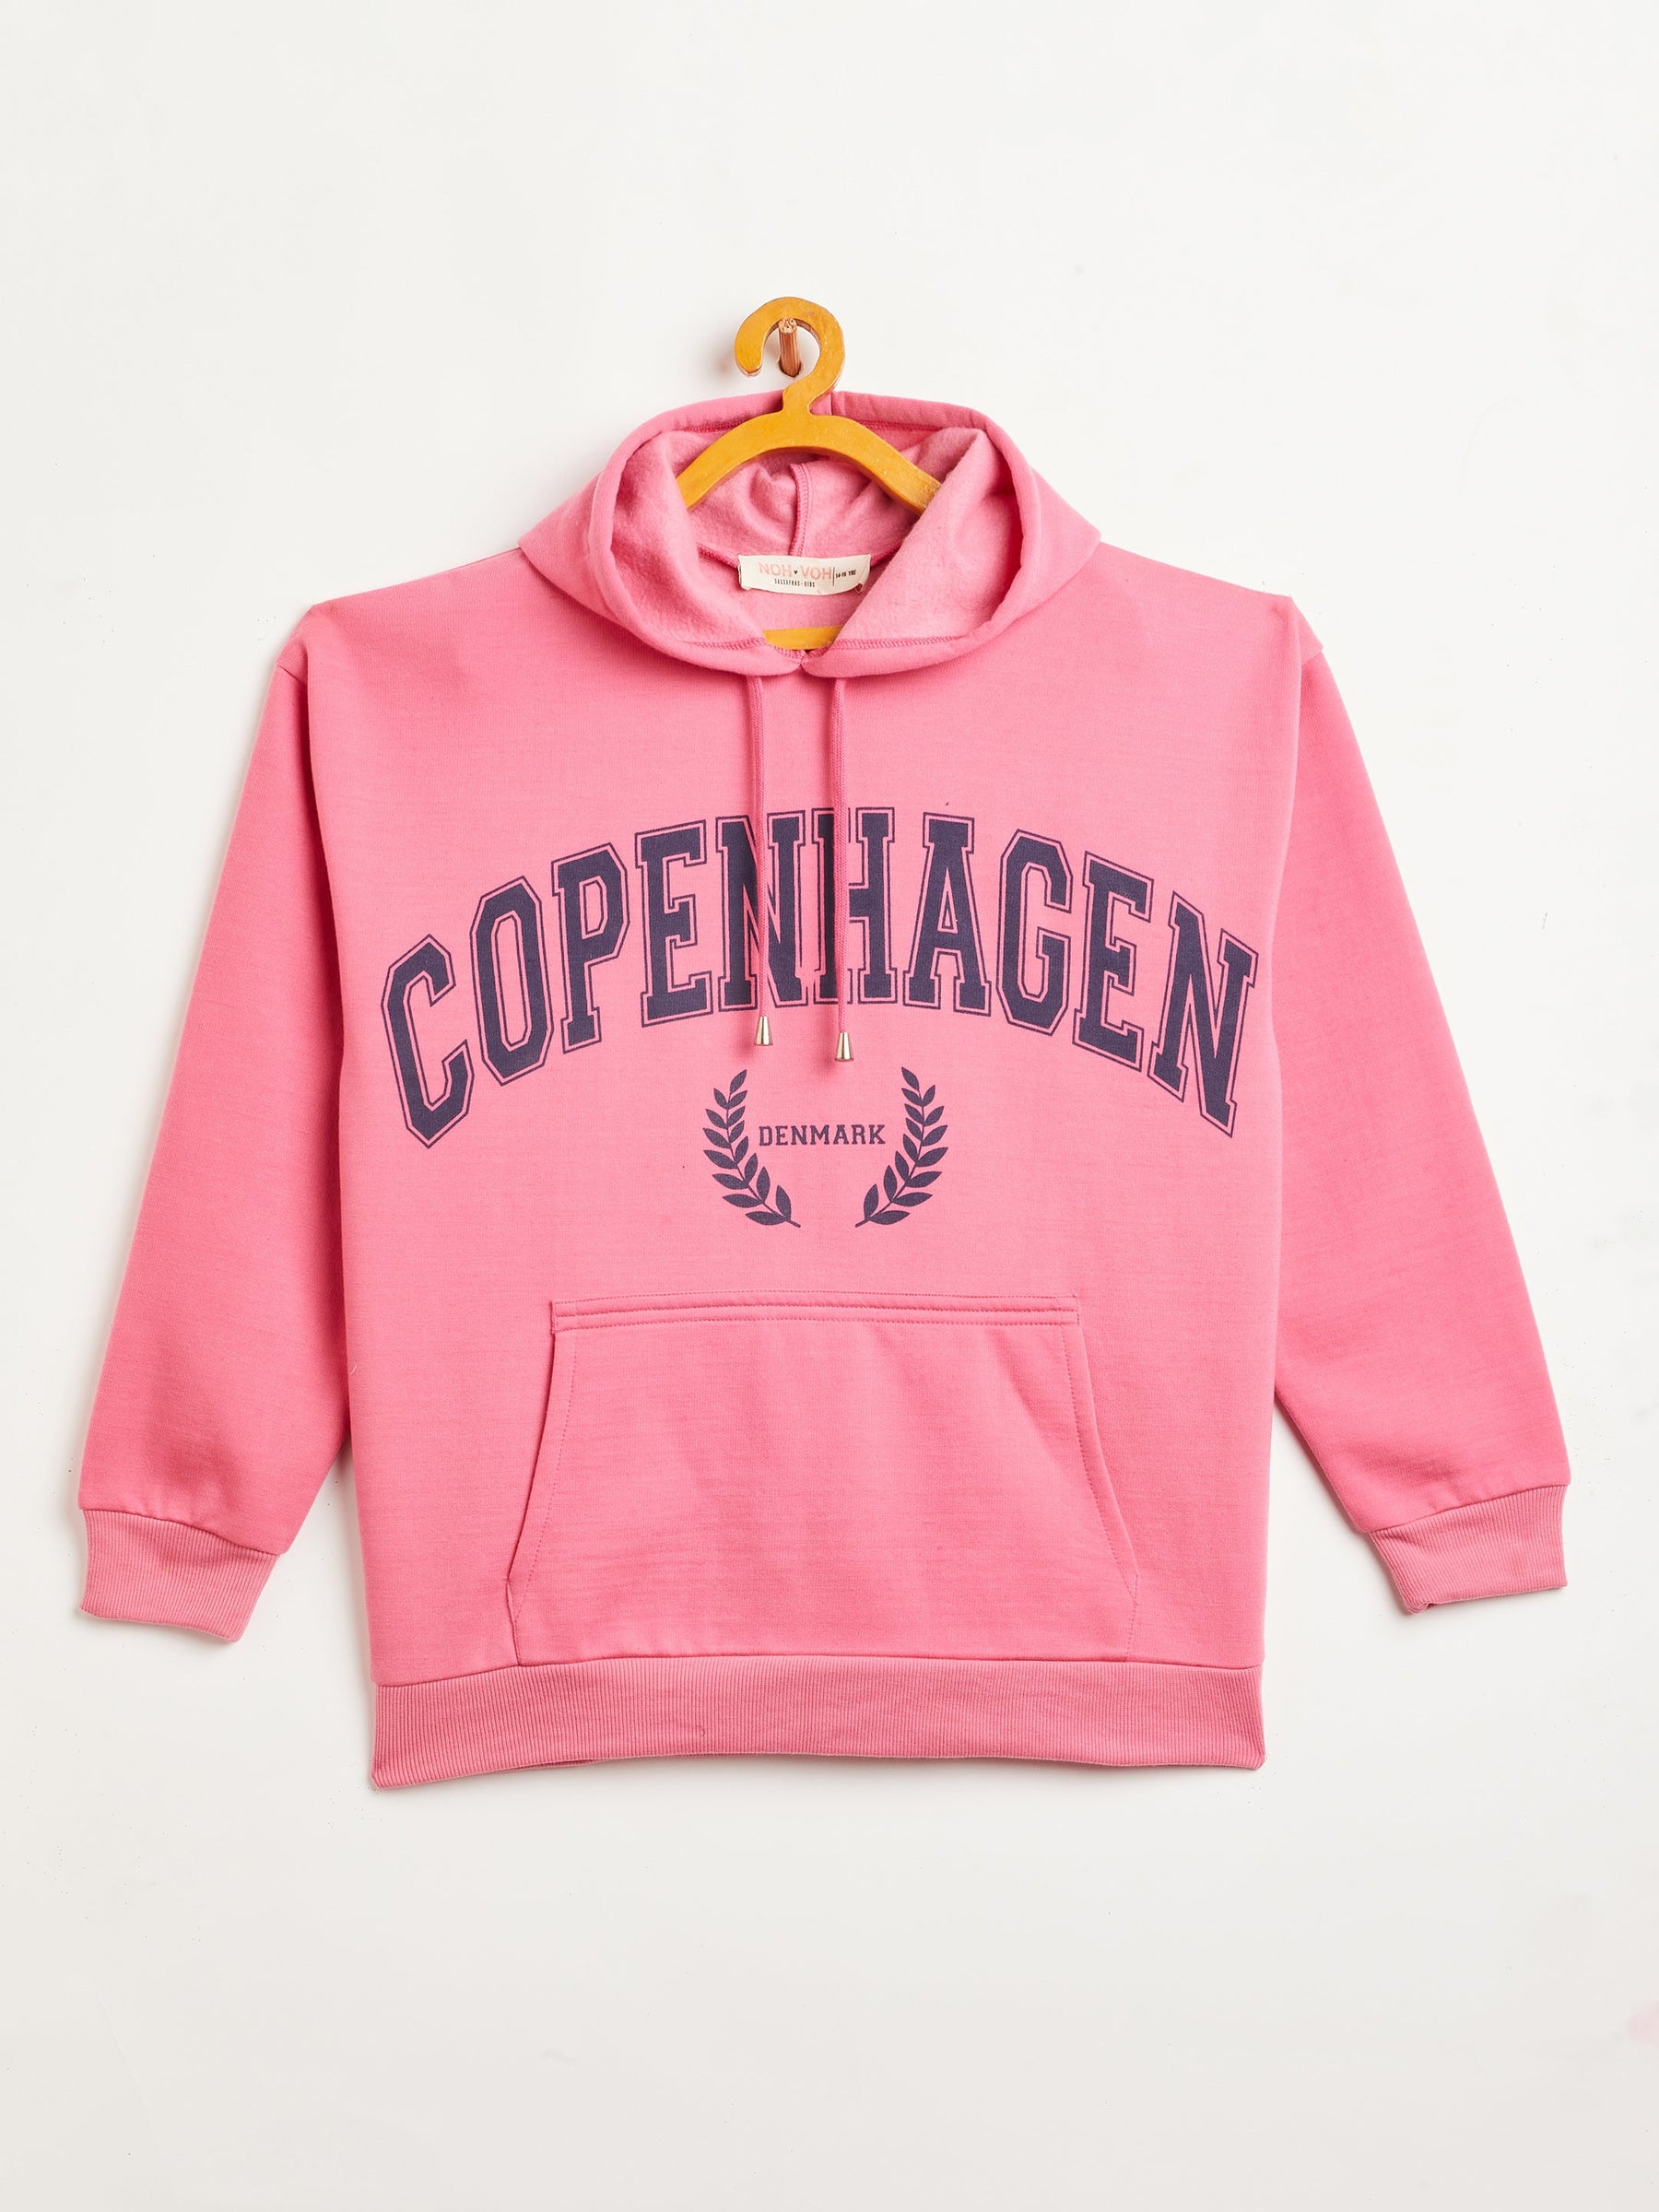 Pink COPENHAGEN Oversized Sweatshirt With Track Pants-Noh.Voh